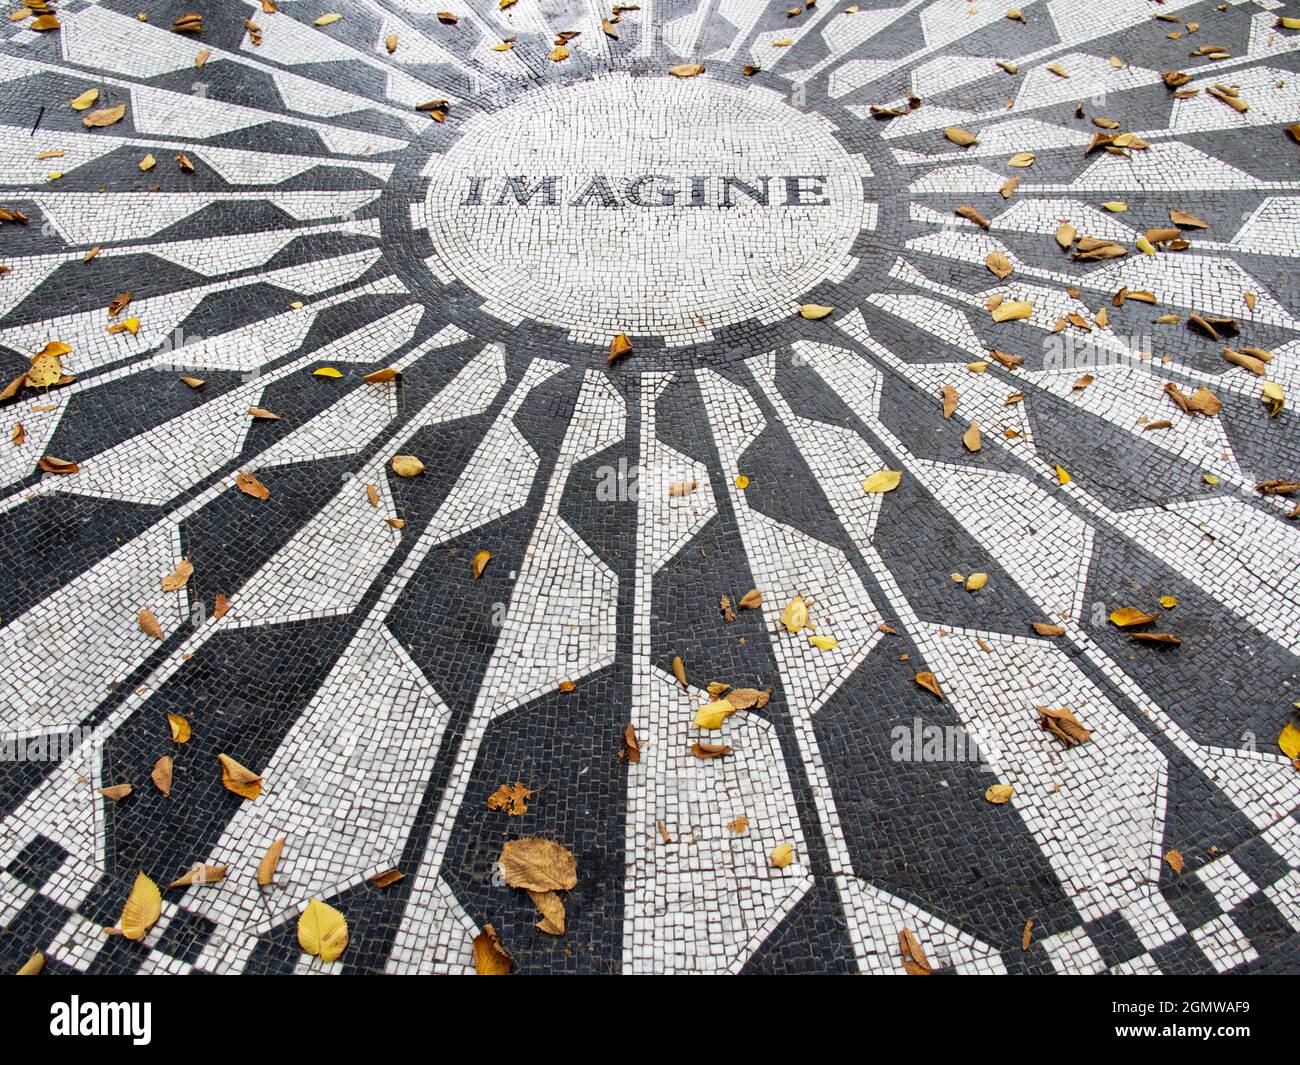 New York, USA - 3 novembre 2013; nessuna gente in vista. Un luogo iconico in una città iconica - il semplice ma dignitoso memoriale di John Lennon a Strawberry Foto Stock